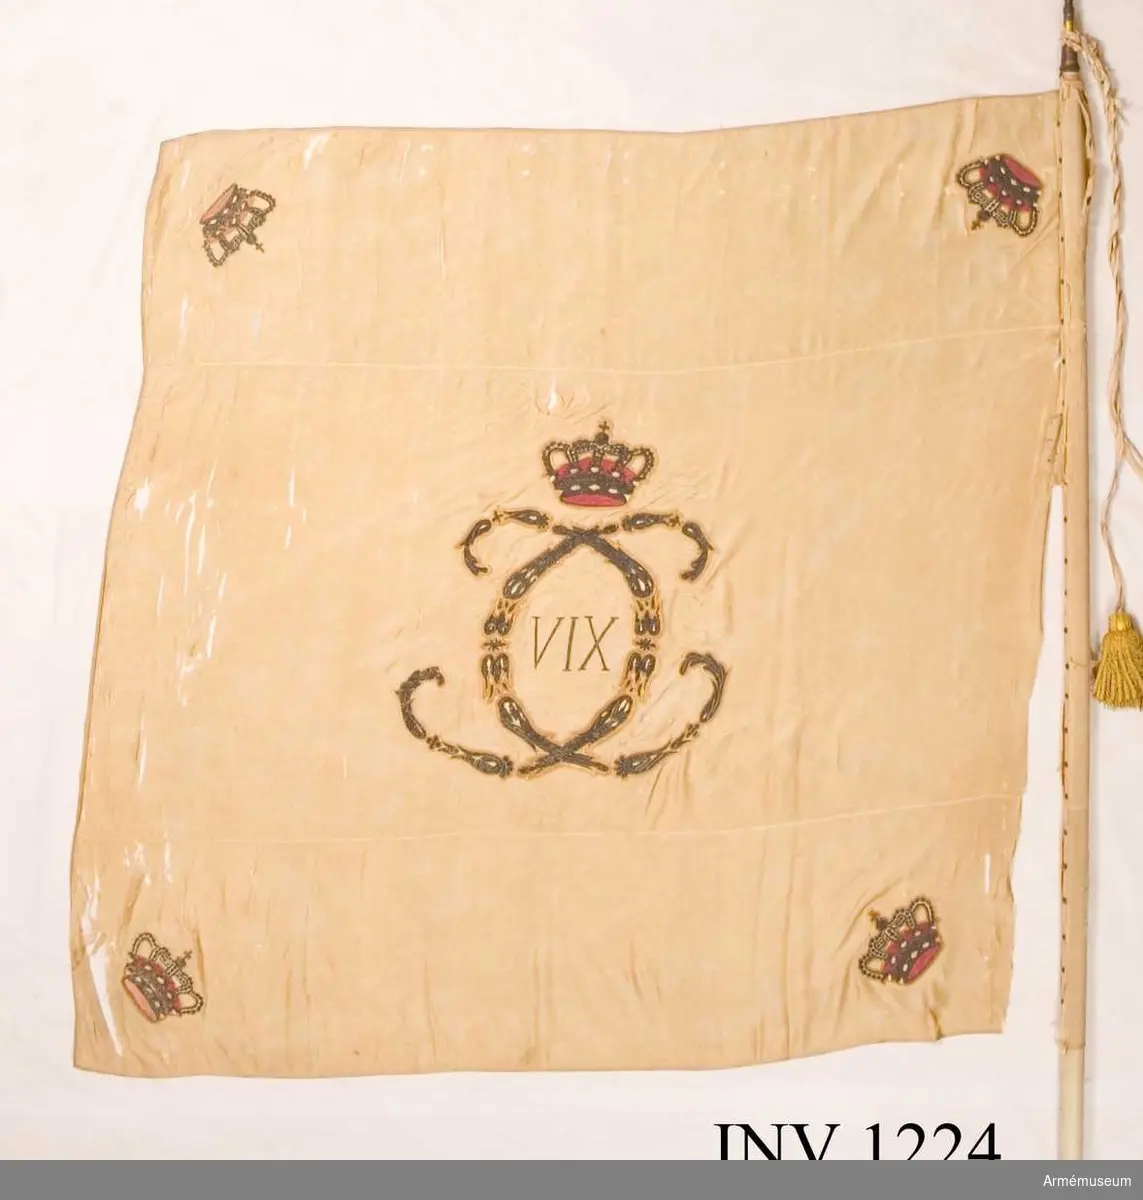 På det gulvita kyprade fansidenet sitter i mitten ett broderat monogram föreställande två motställda "C" inneslutande "XIV". Broderiet utfört i plattsöm med silke och silvertråd. Ovanför monogrammet sitter en kunglig krona utförd i plattsöm med foder i rött silke. I fanans hörn sitter snedställda kronor i rött silke. Fanspetsen har Karl XIV Johans monogram, dock mycket ärgat. Fanstången är gulvitmålad. Kravatten, den lilla del som återstår, är uppsydd på ett bomullsband.